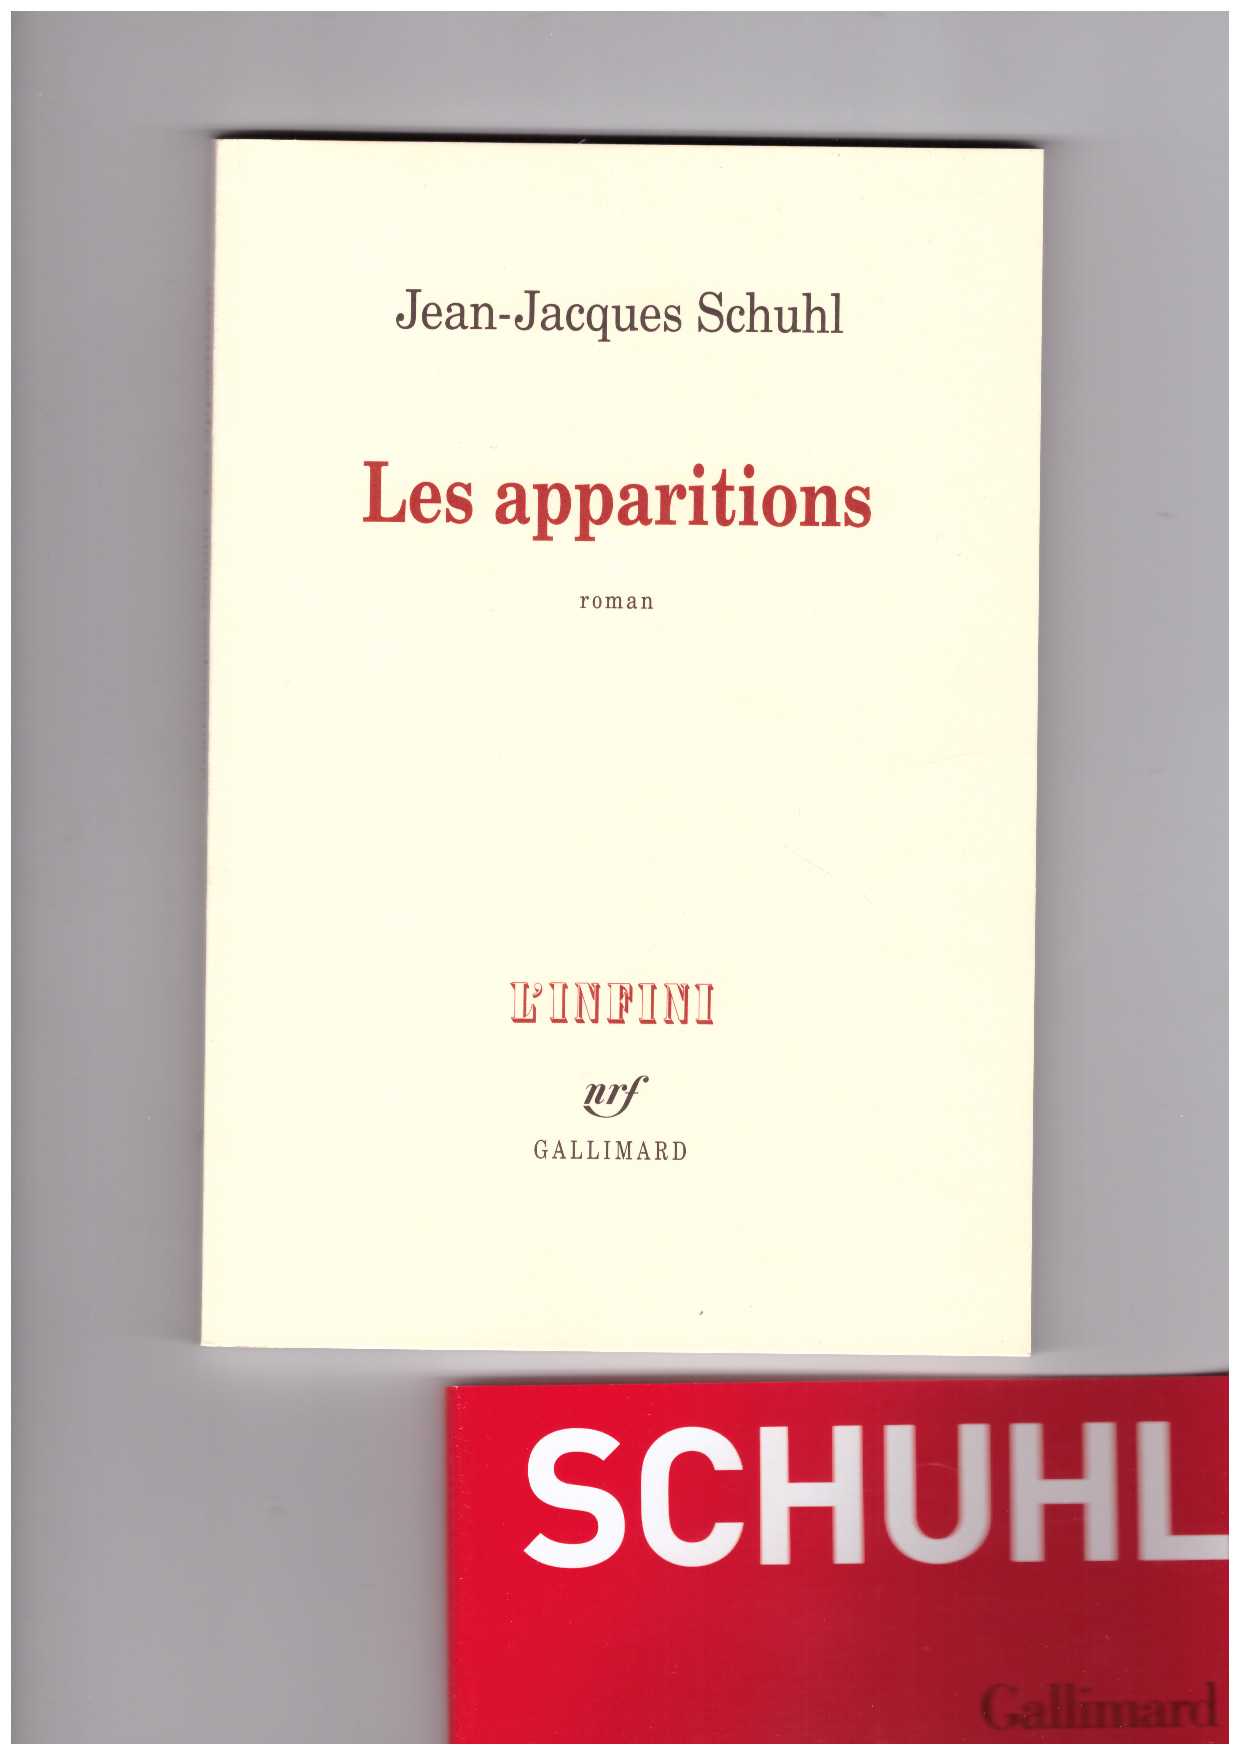 SCHUHL, Jean-Jacques - Les apparitions